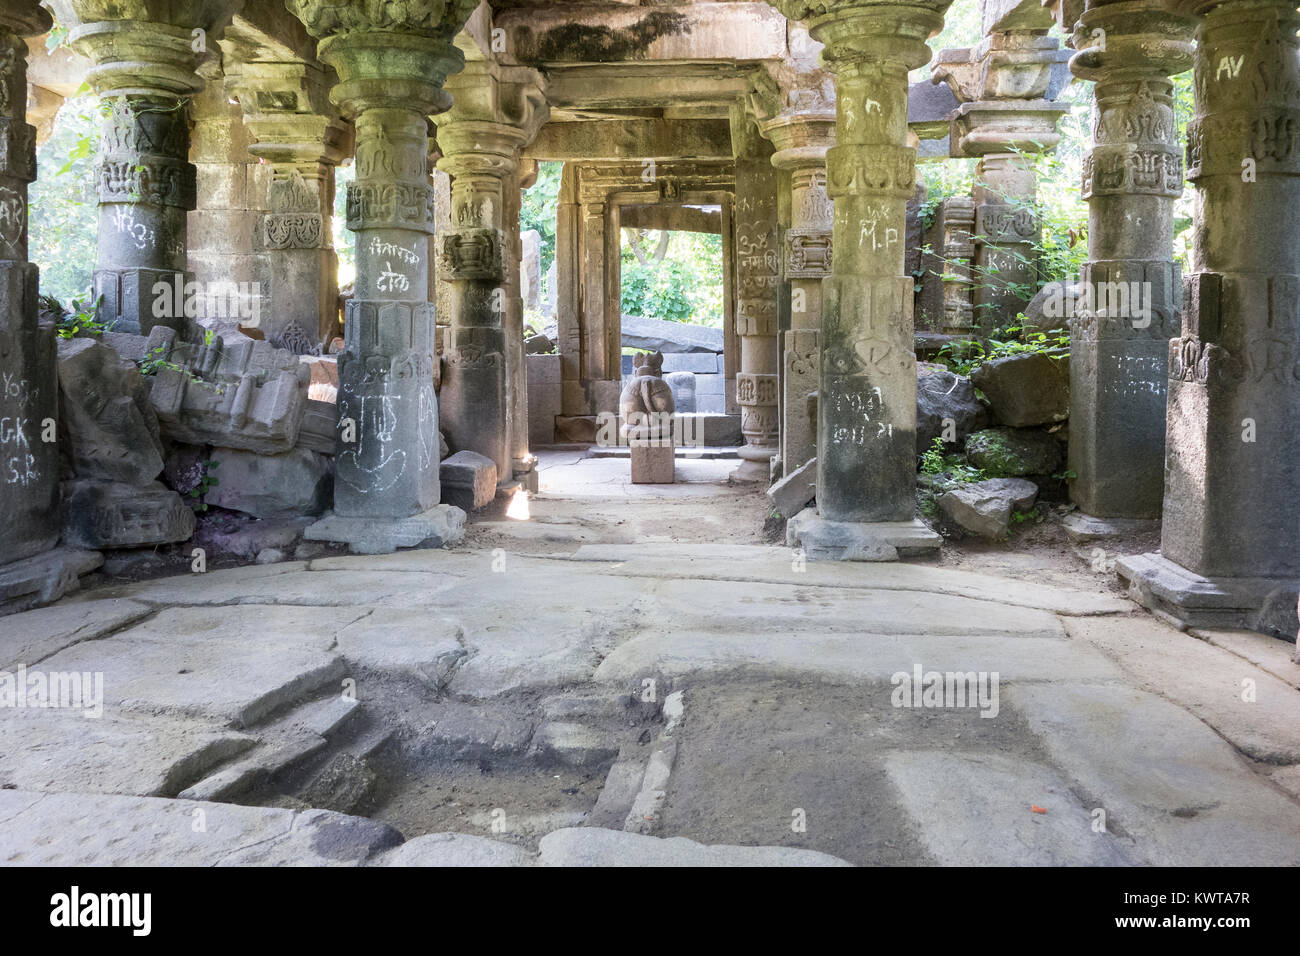 Leer, verfallenen Tempel Ruinen entlang Marge von Lonar See, Maharashtra, Indien. Stockfoto